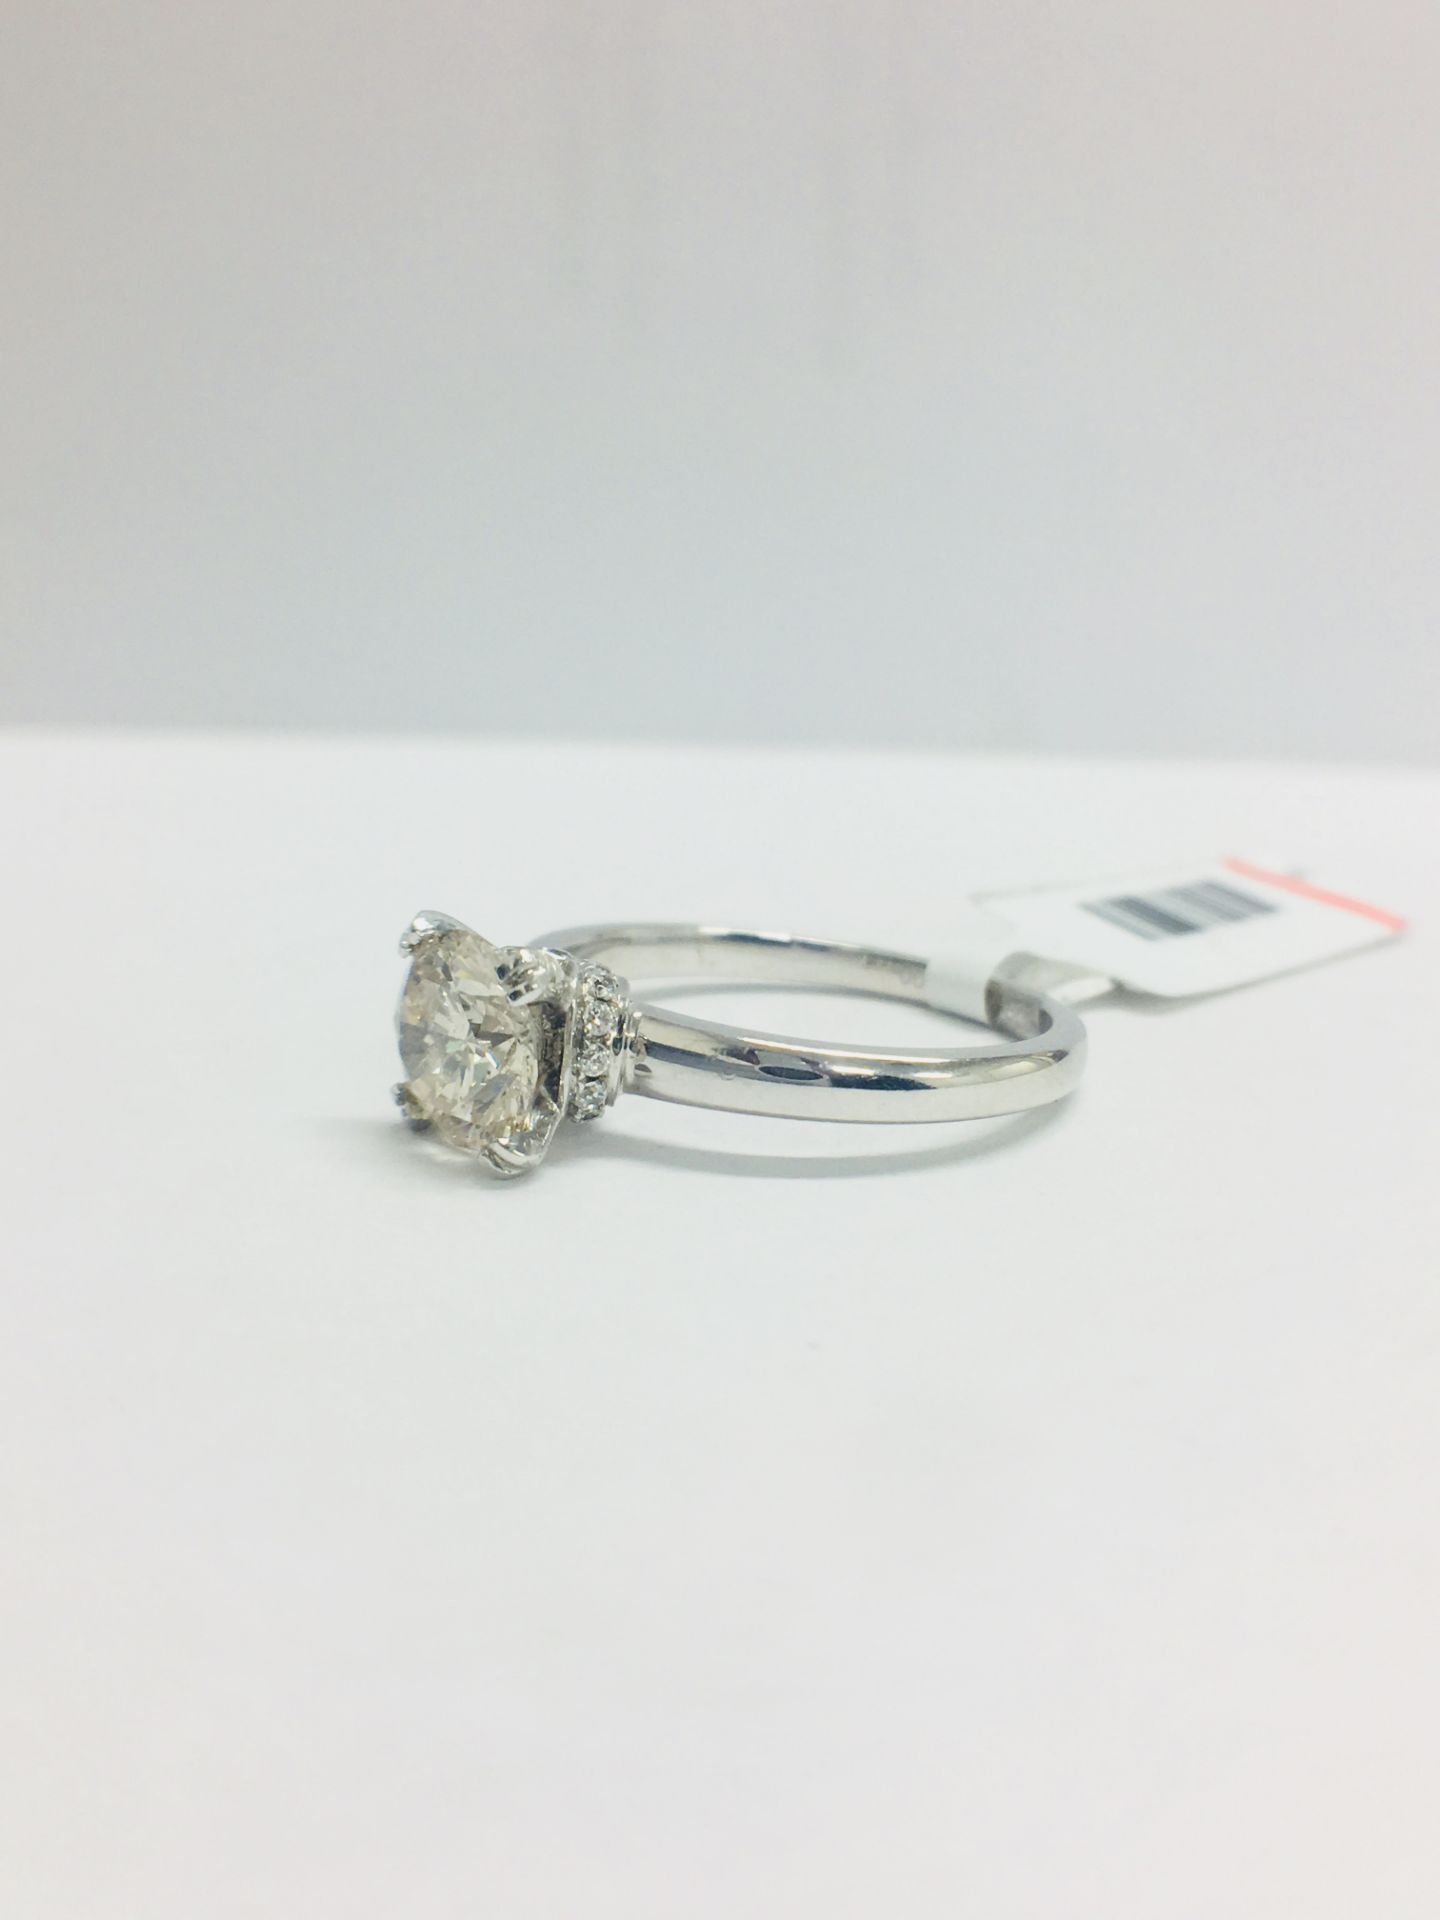 1ct Diamond Solitaire ring set in Platinum diamnd setting - Image 3 of 13